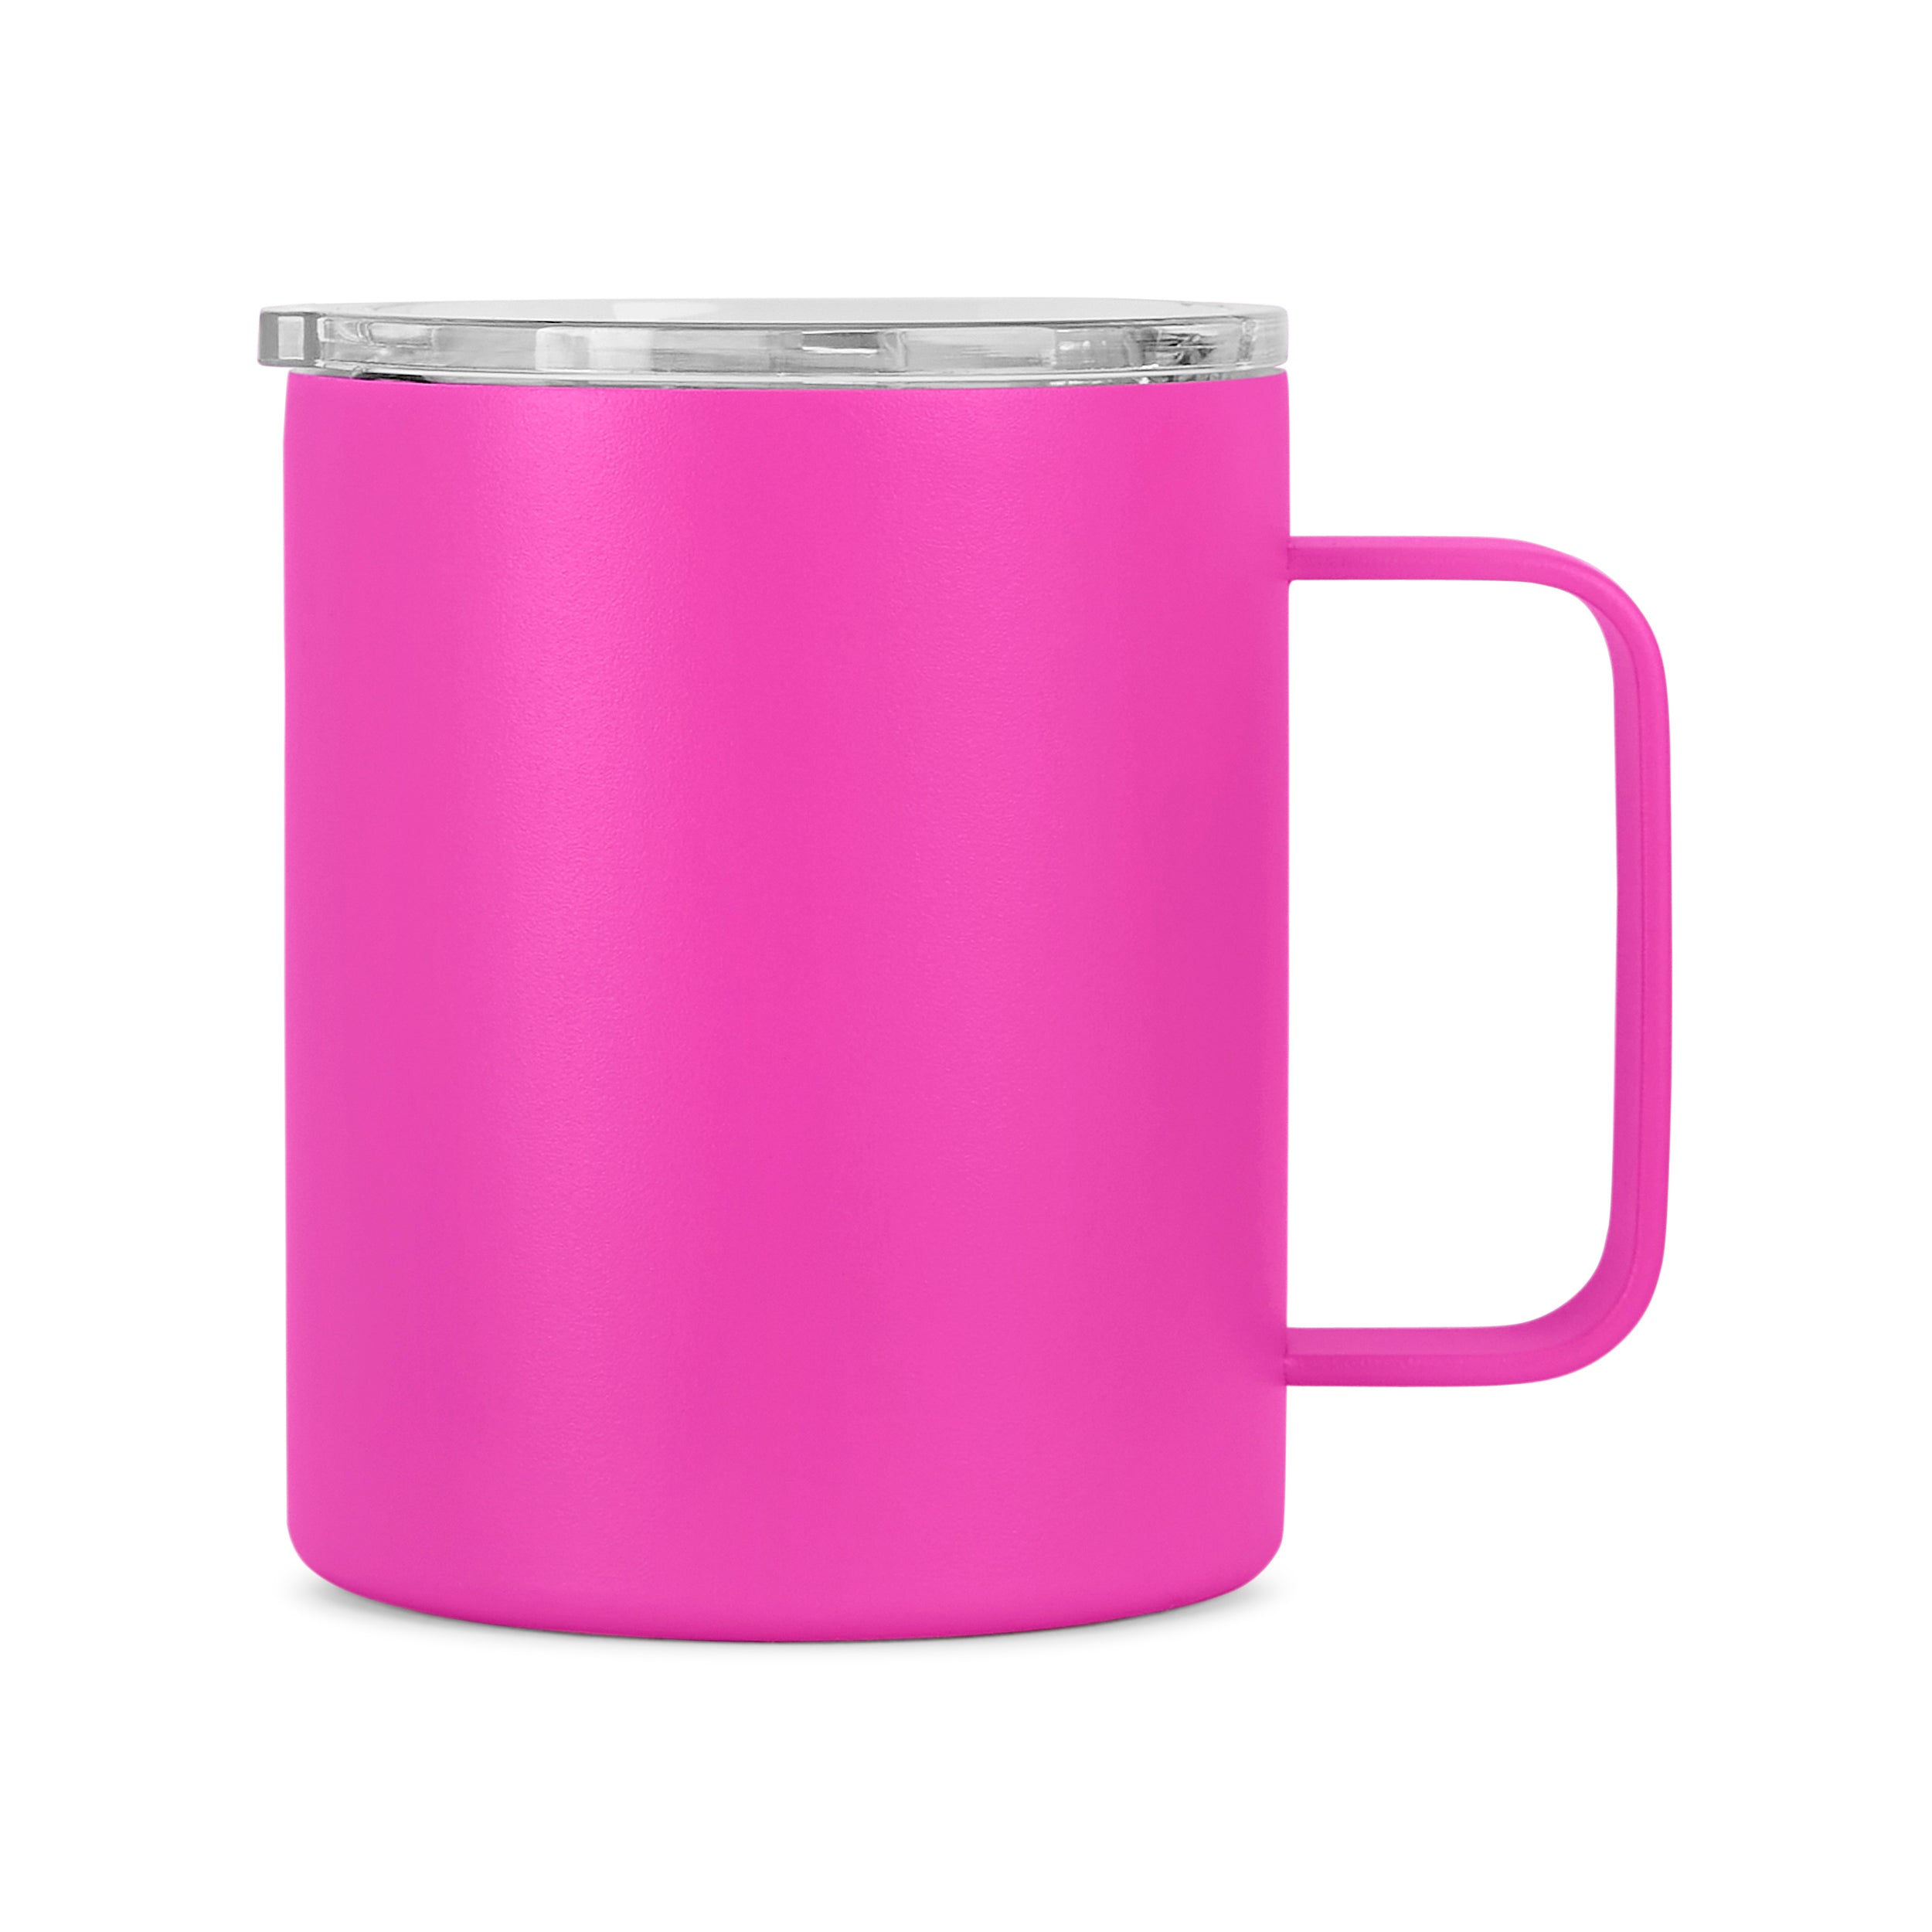 12oz Coffee Mug for Proposal